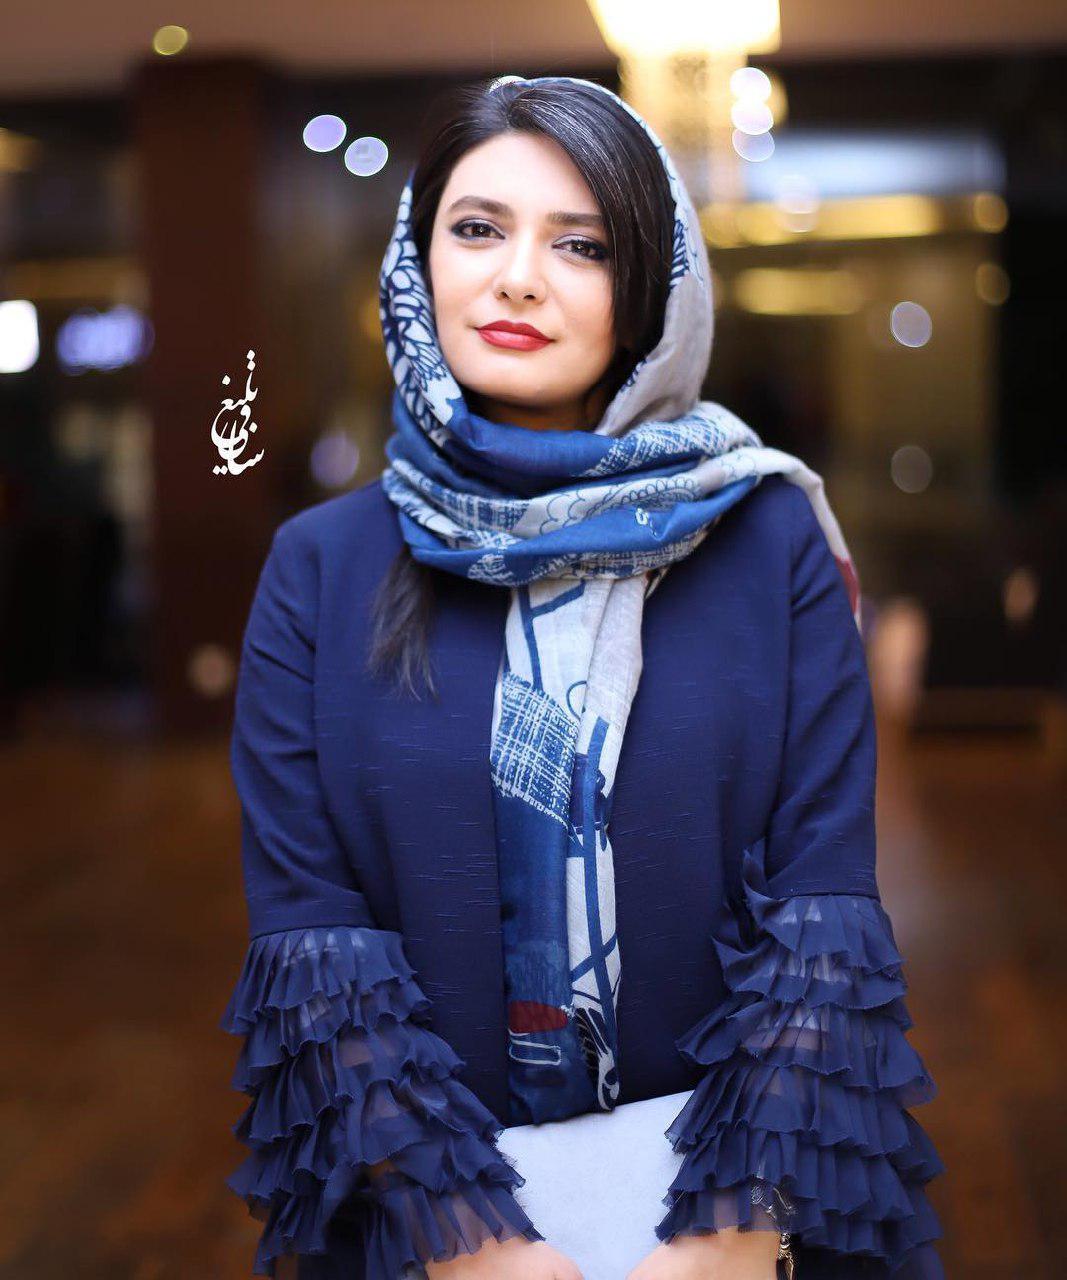 عکس های جدید بازیگران زن ایرانی در اینستاگرام